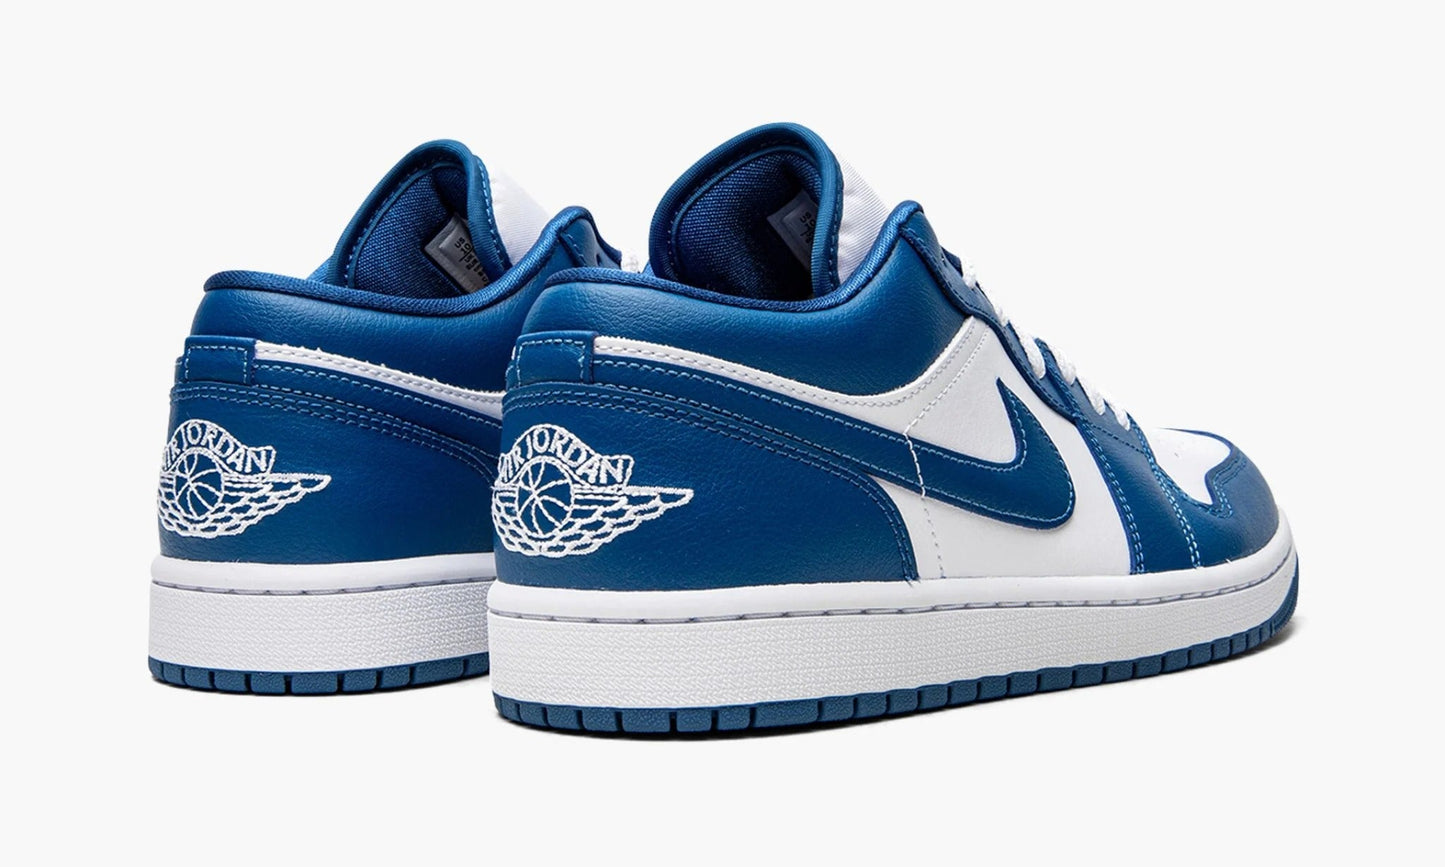 Nike Air Jordan 1 Low WMNS "Marina Blue" - DC0774 114 | WAYOFF